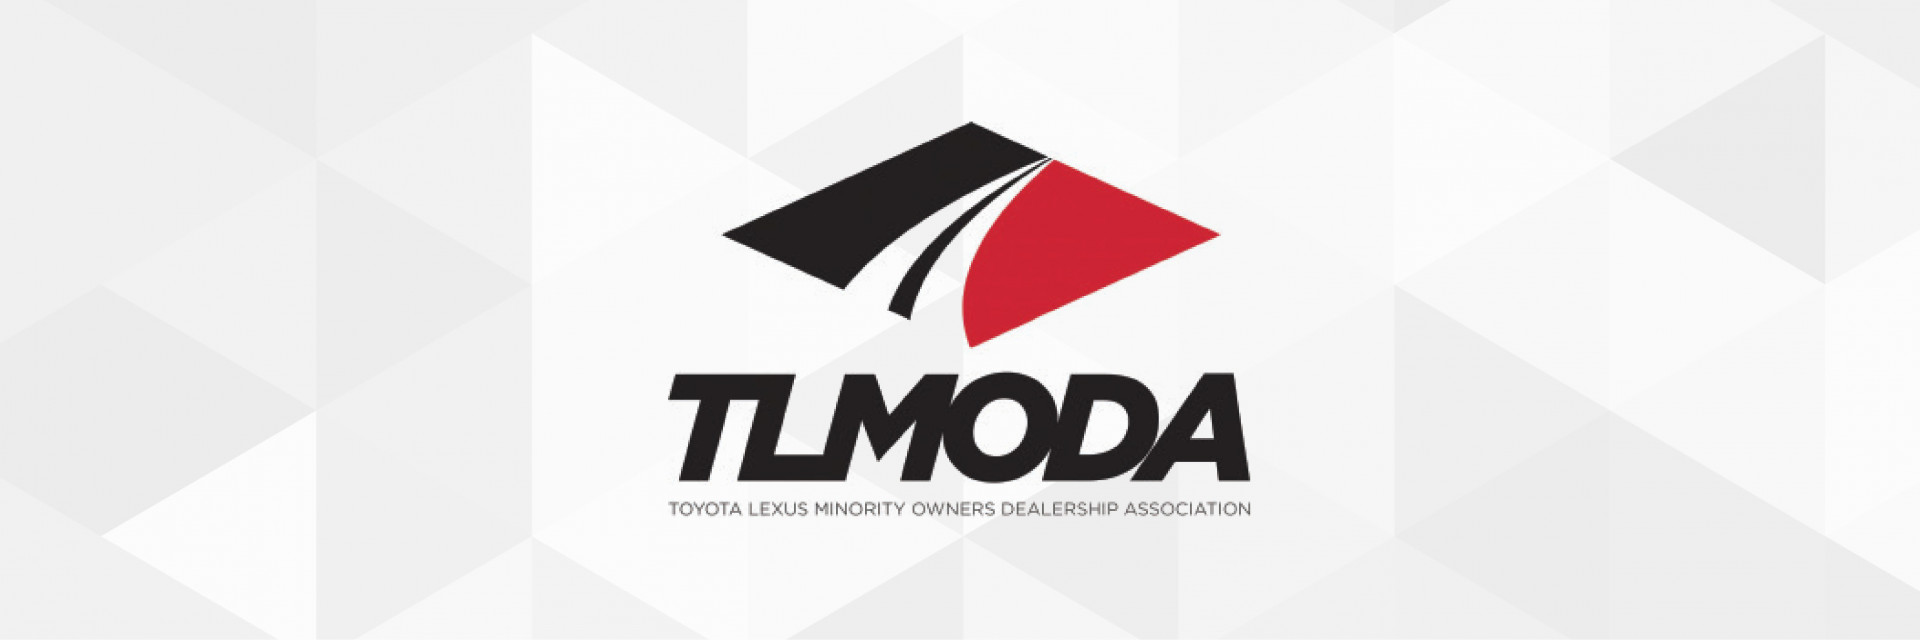 TLMODA_header.jpg